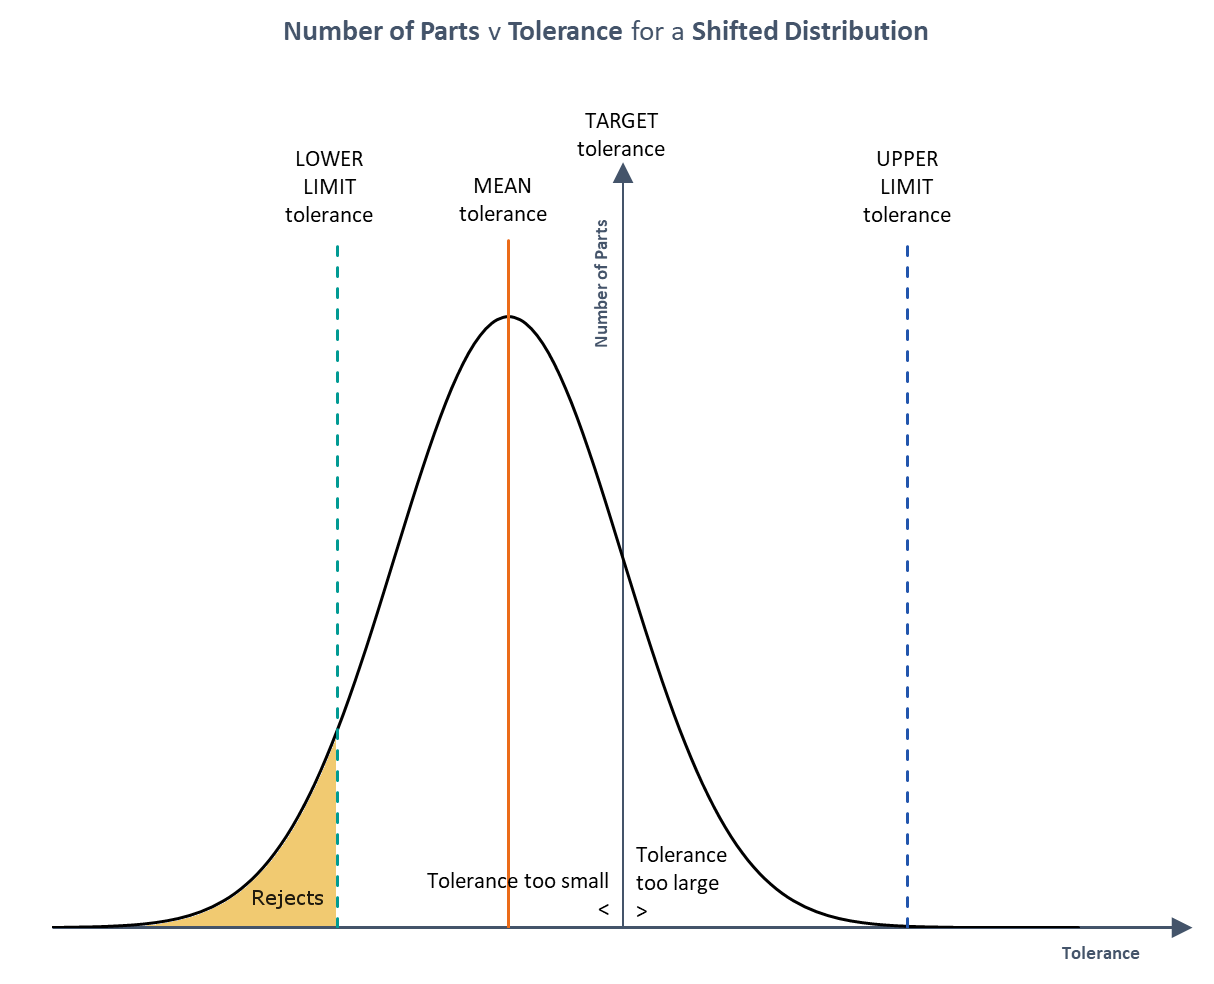 Population v Tolerance for Shifted Distribution